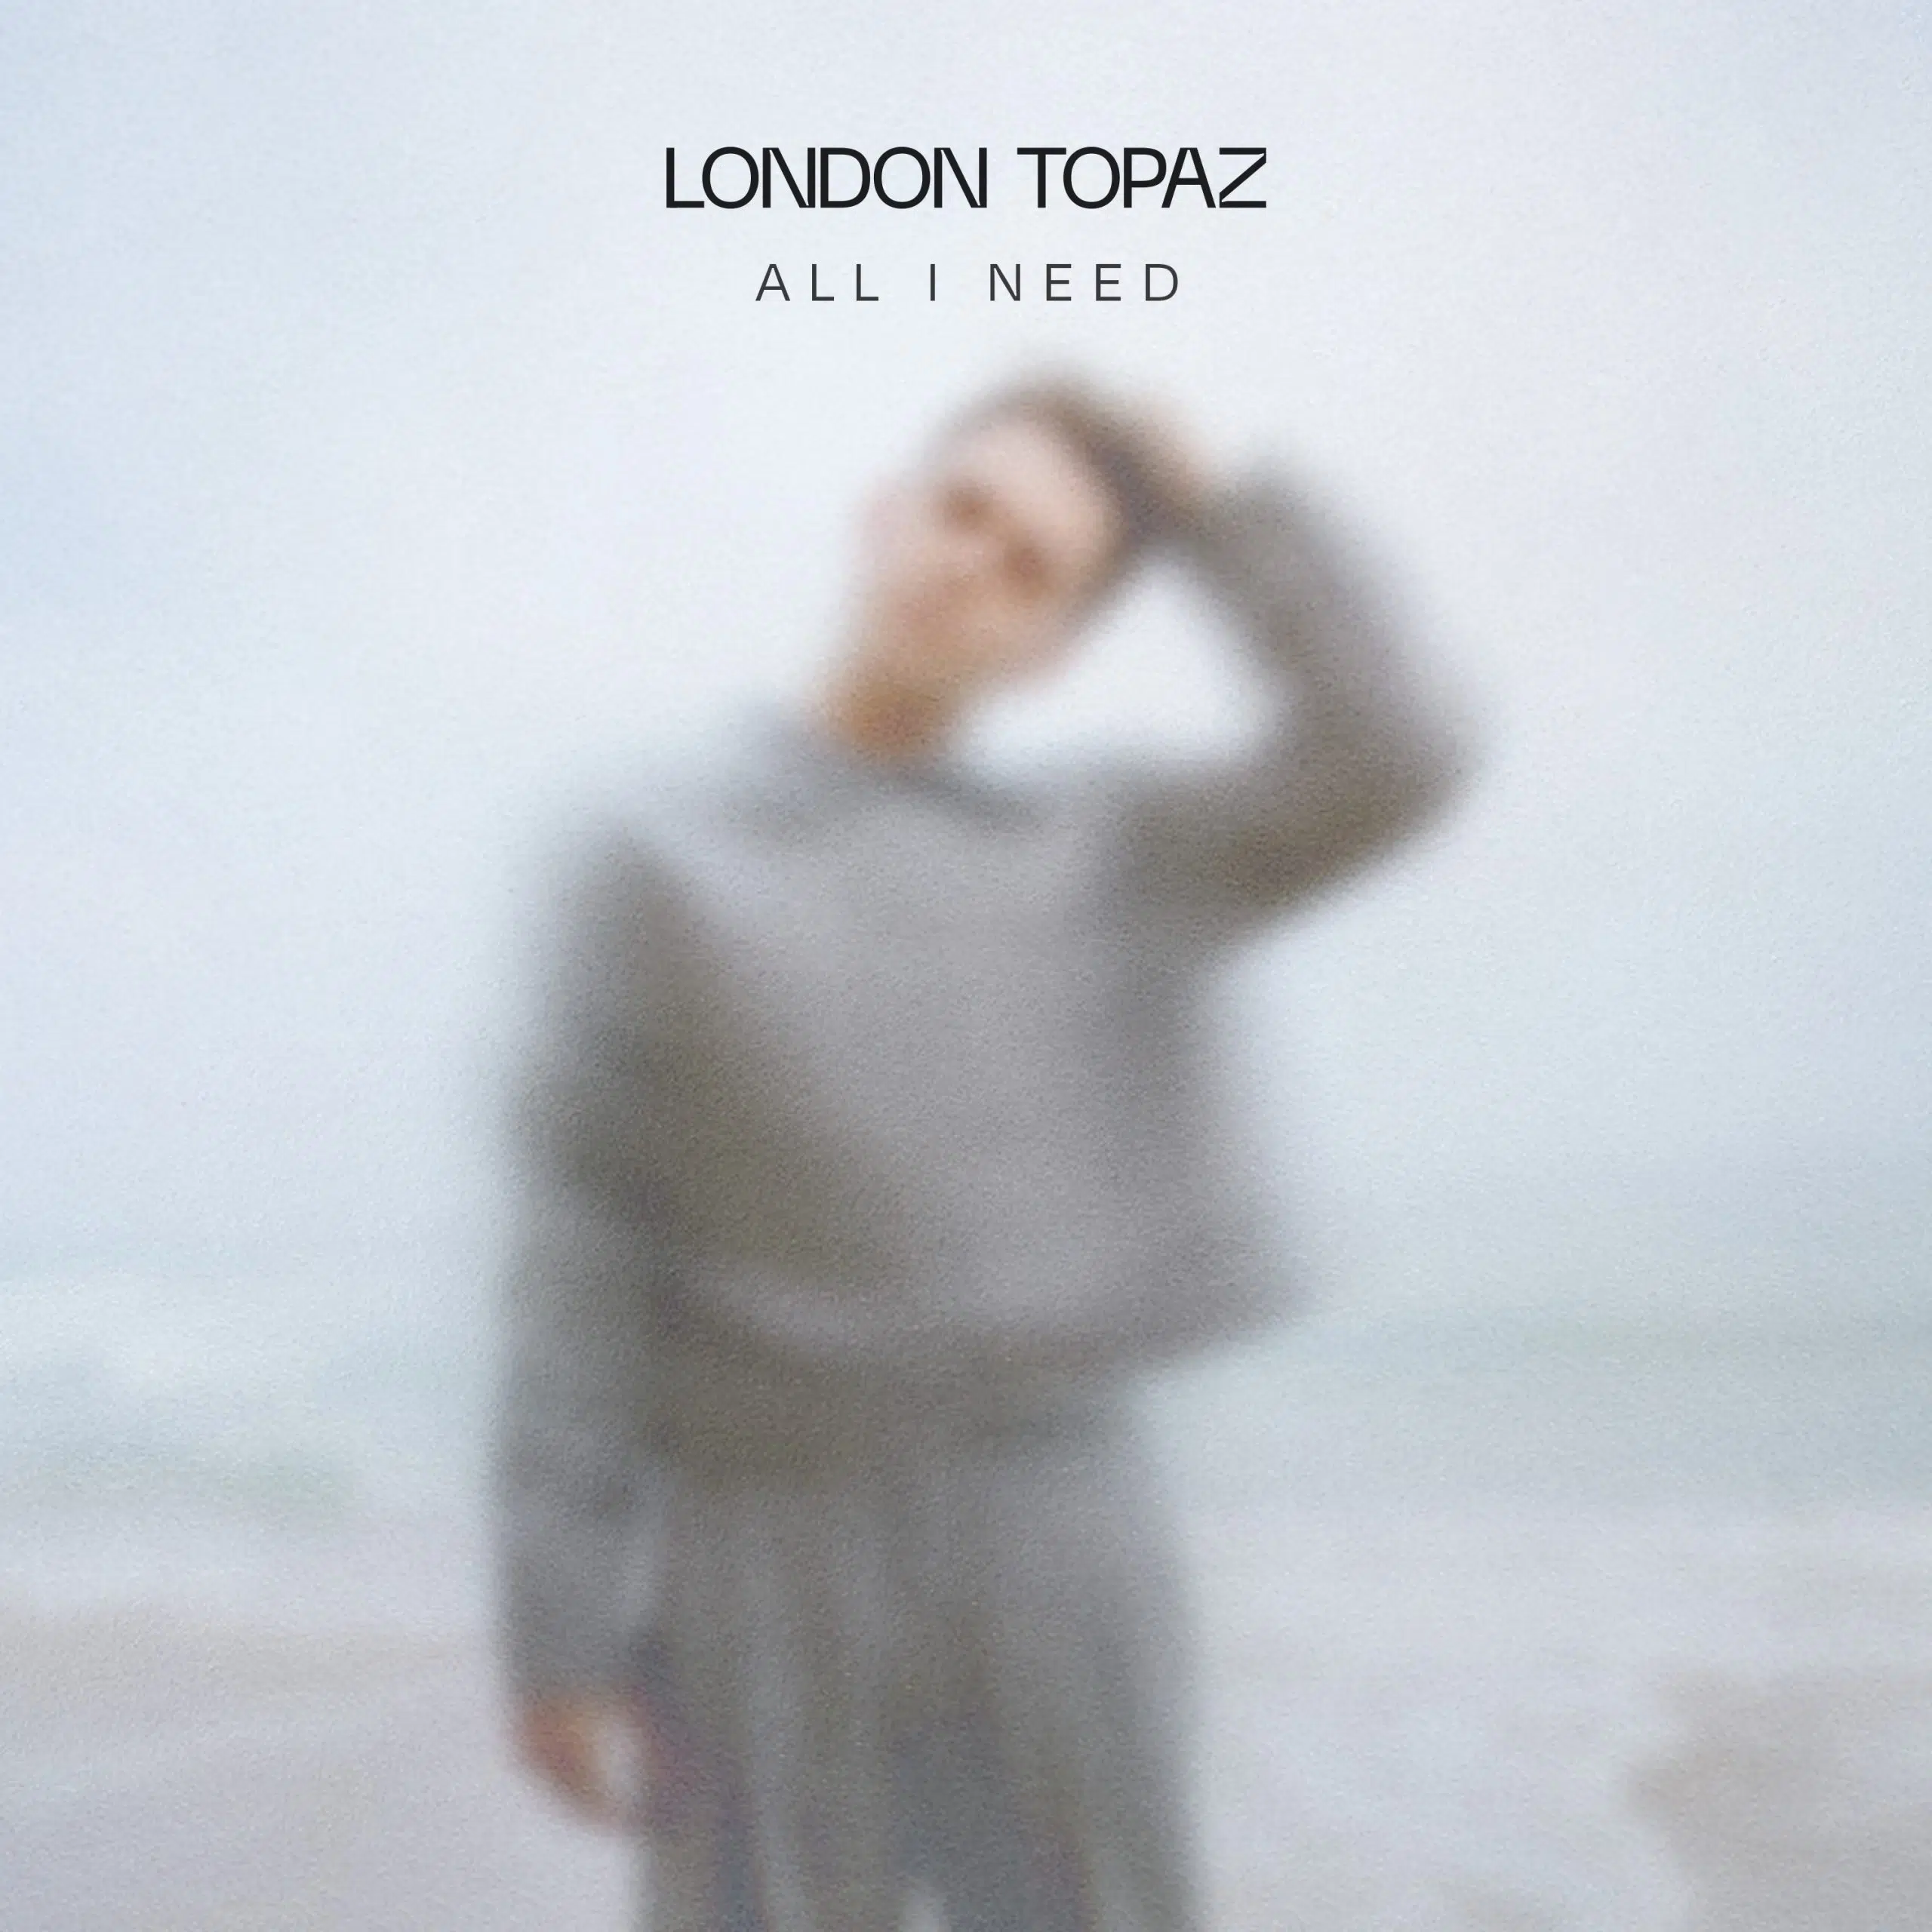 London Topaz “All I Need”